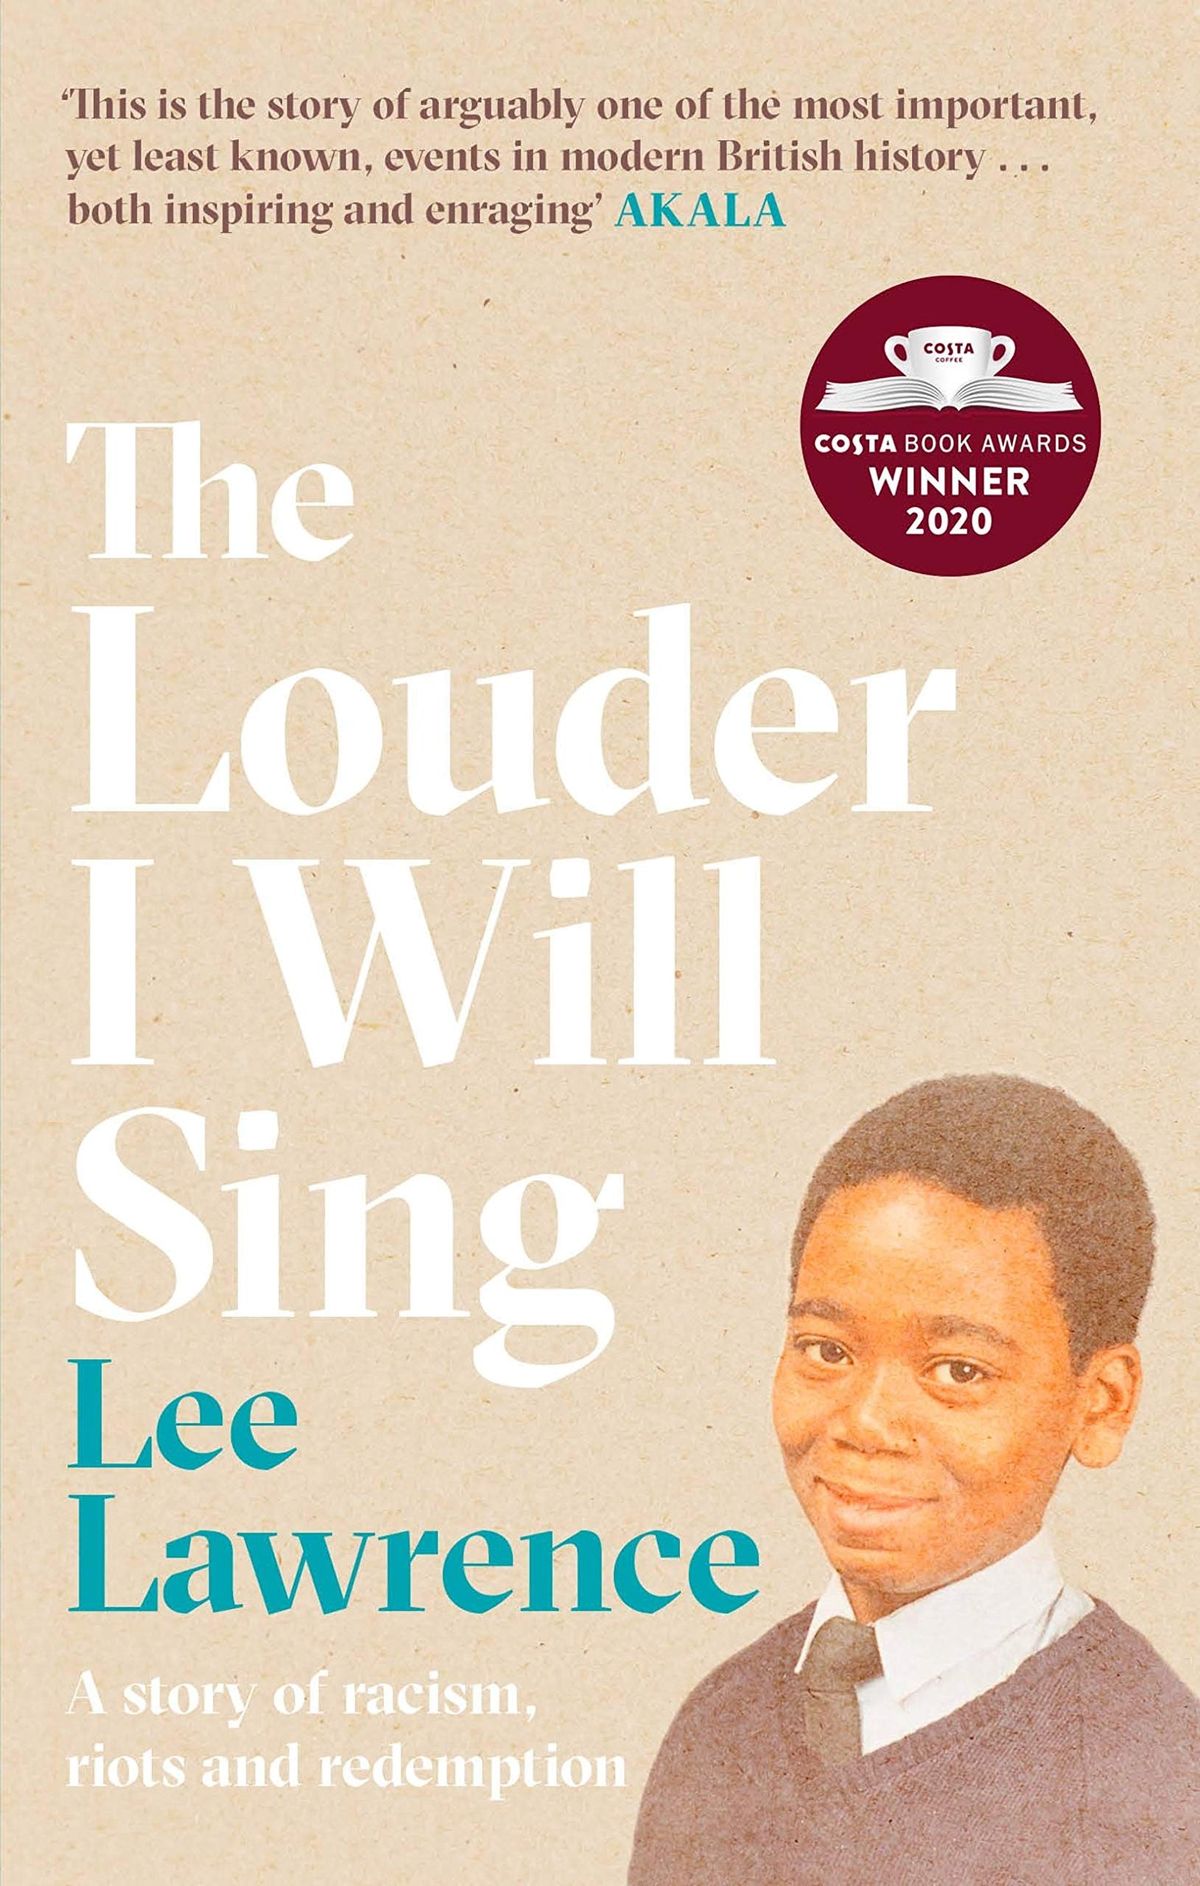 Lee Lawrence'i valjemini laulan on lugu põlvkondlikust jõust – KATEND